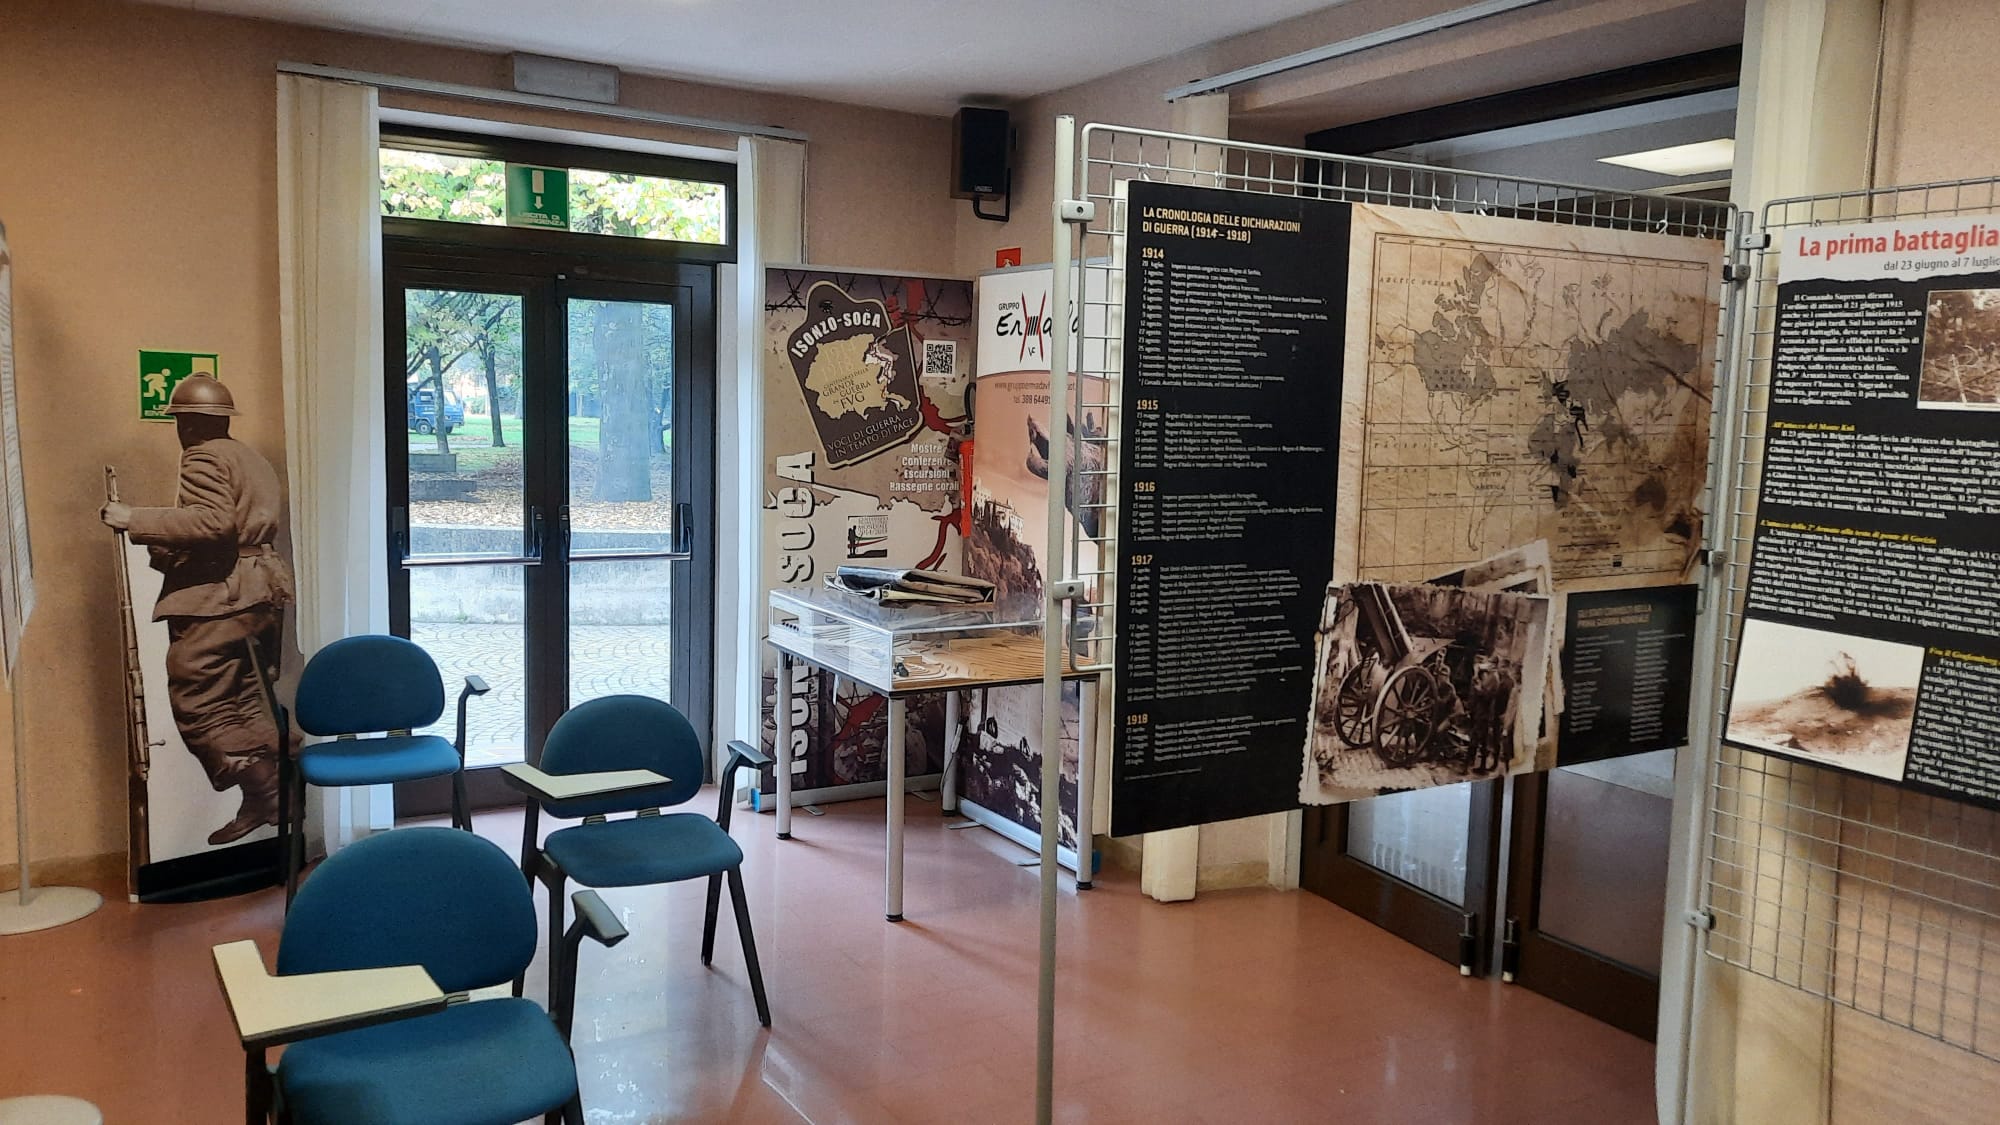 Immagine per Capriva ricorda le battaglie dell'Isonzo, «Milite ignoto cittadino onorario» 